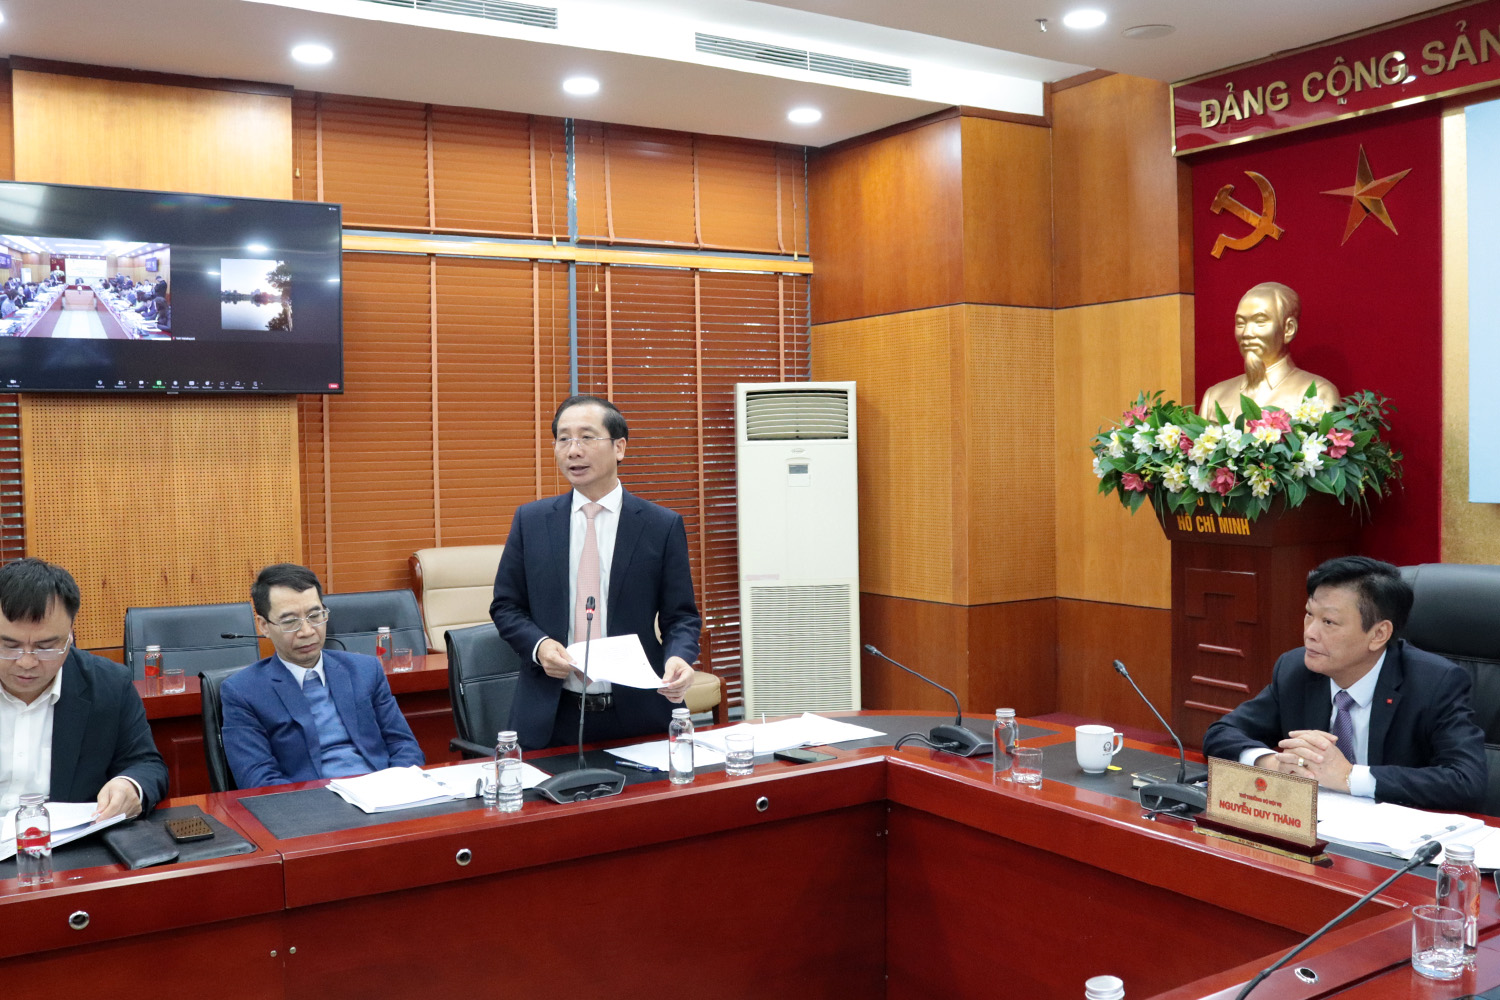 Giám đốc Nguyễn Bá Chiến trình bày tại  Hội thảo Báo cáo kết quả kỳ thi thử kỹ thuật phục vụ kiểm định chất lượng đầu vào công chức.